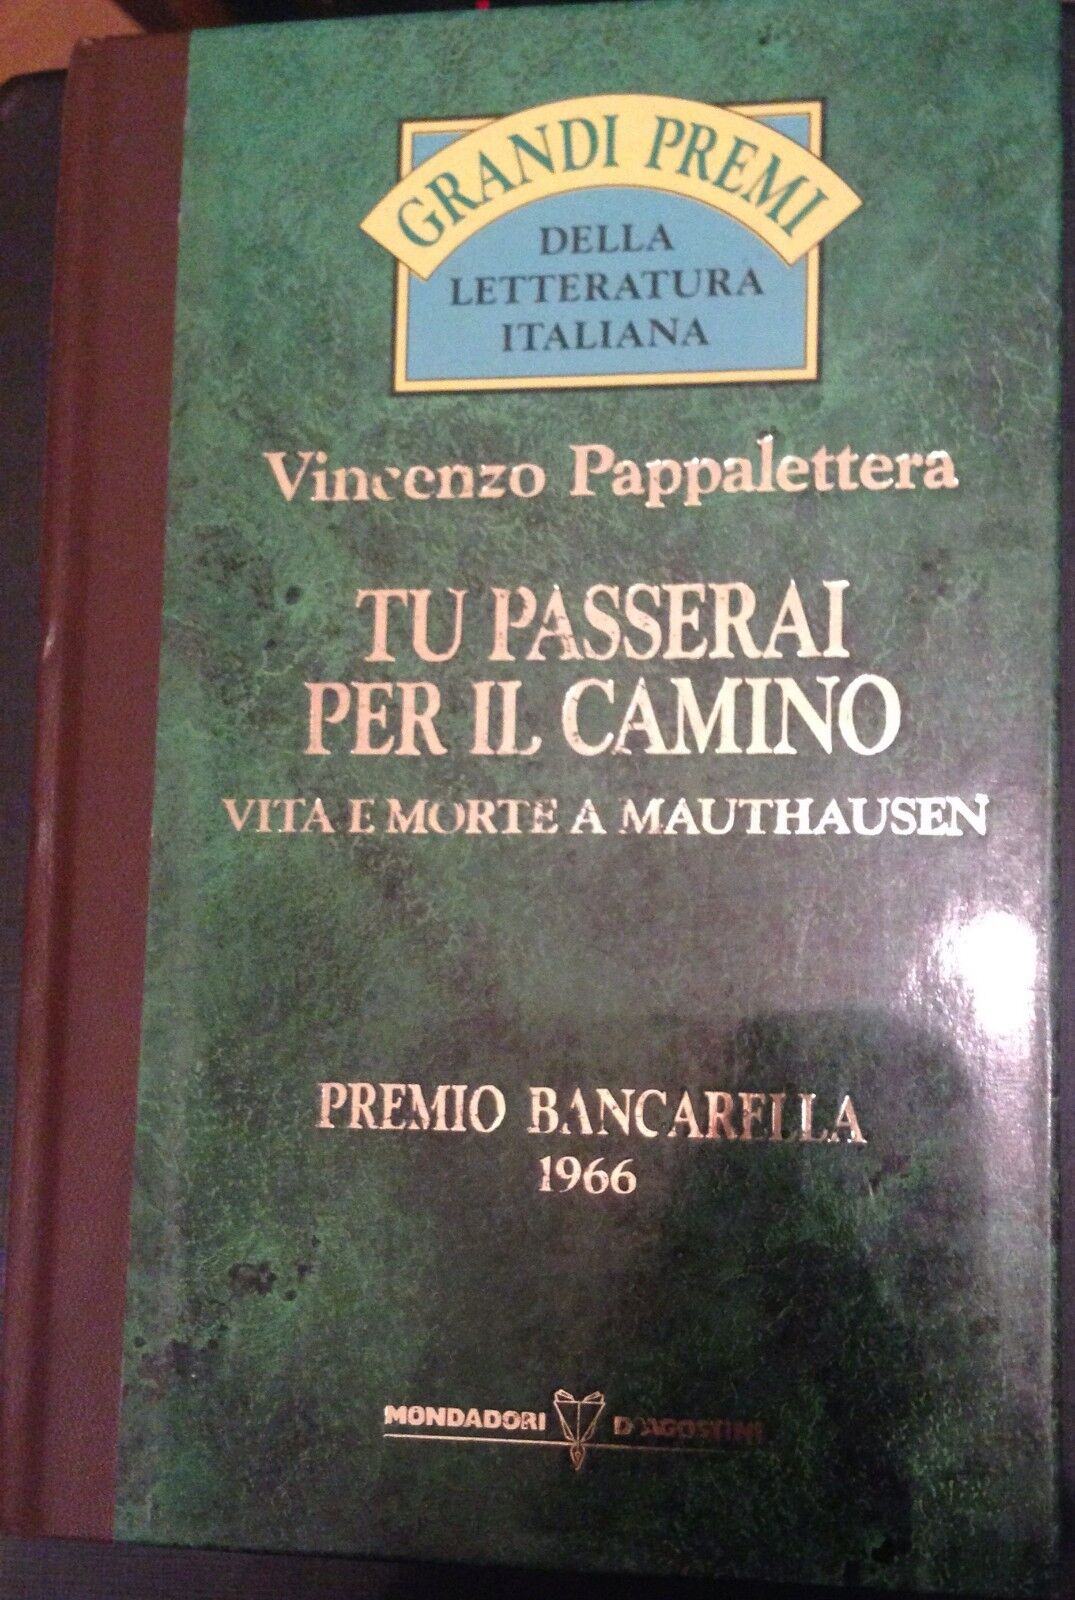 Tu passerai per il camino - Vincenzo Pappalettera - Mondadori -1966 - M